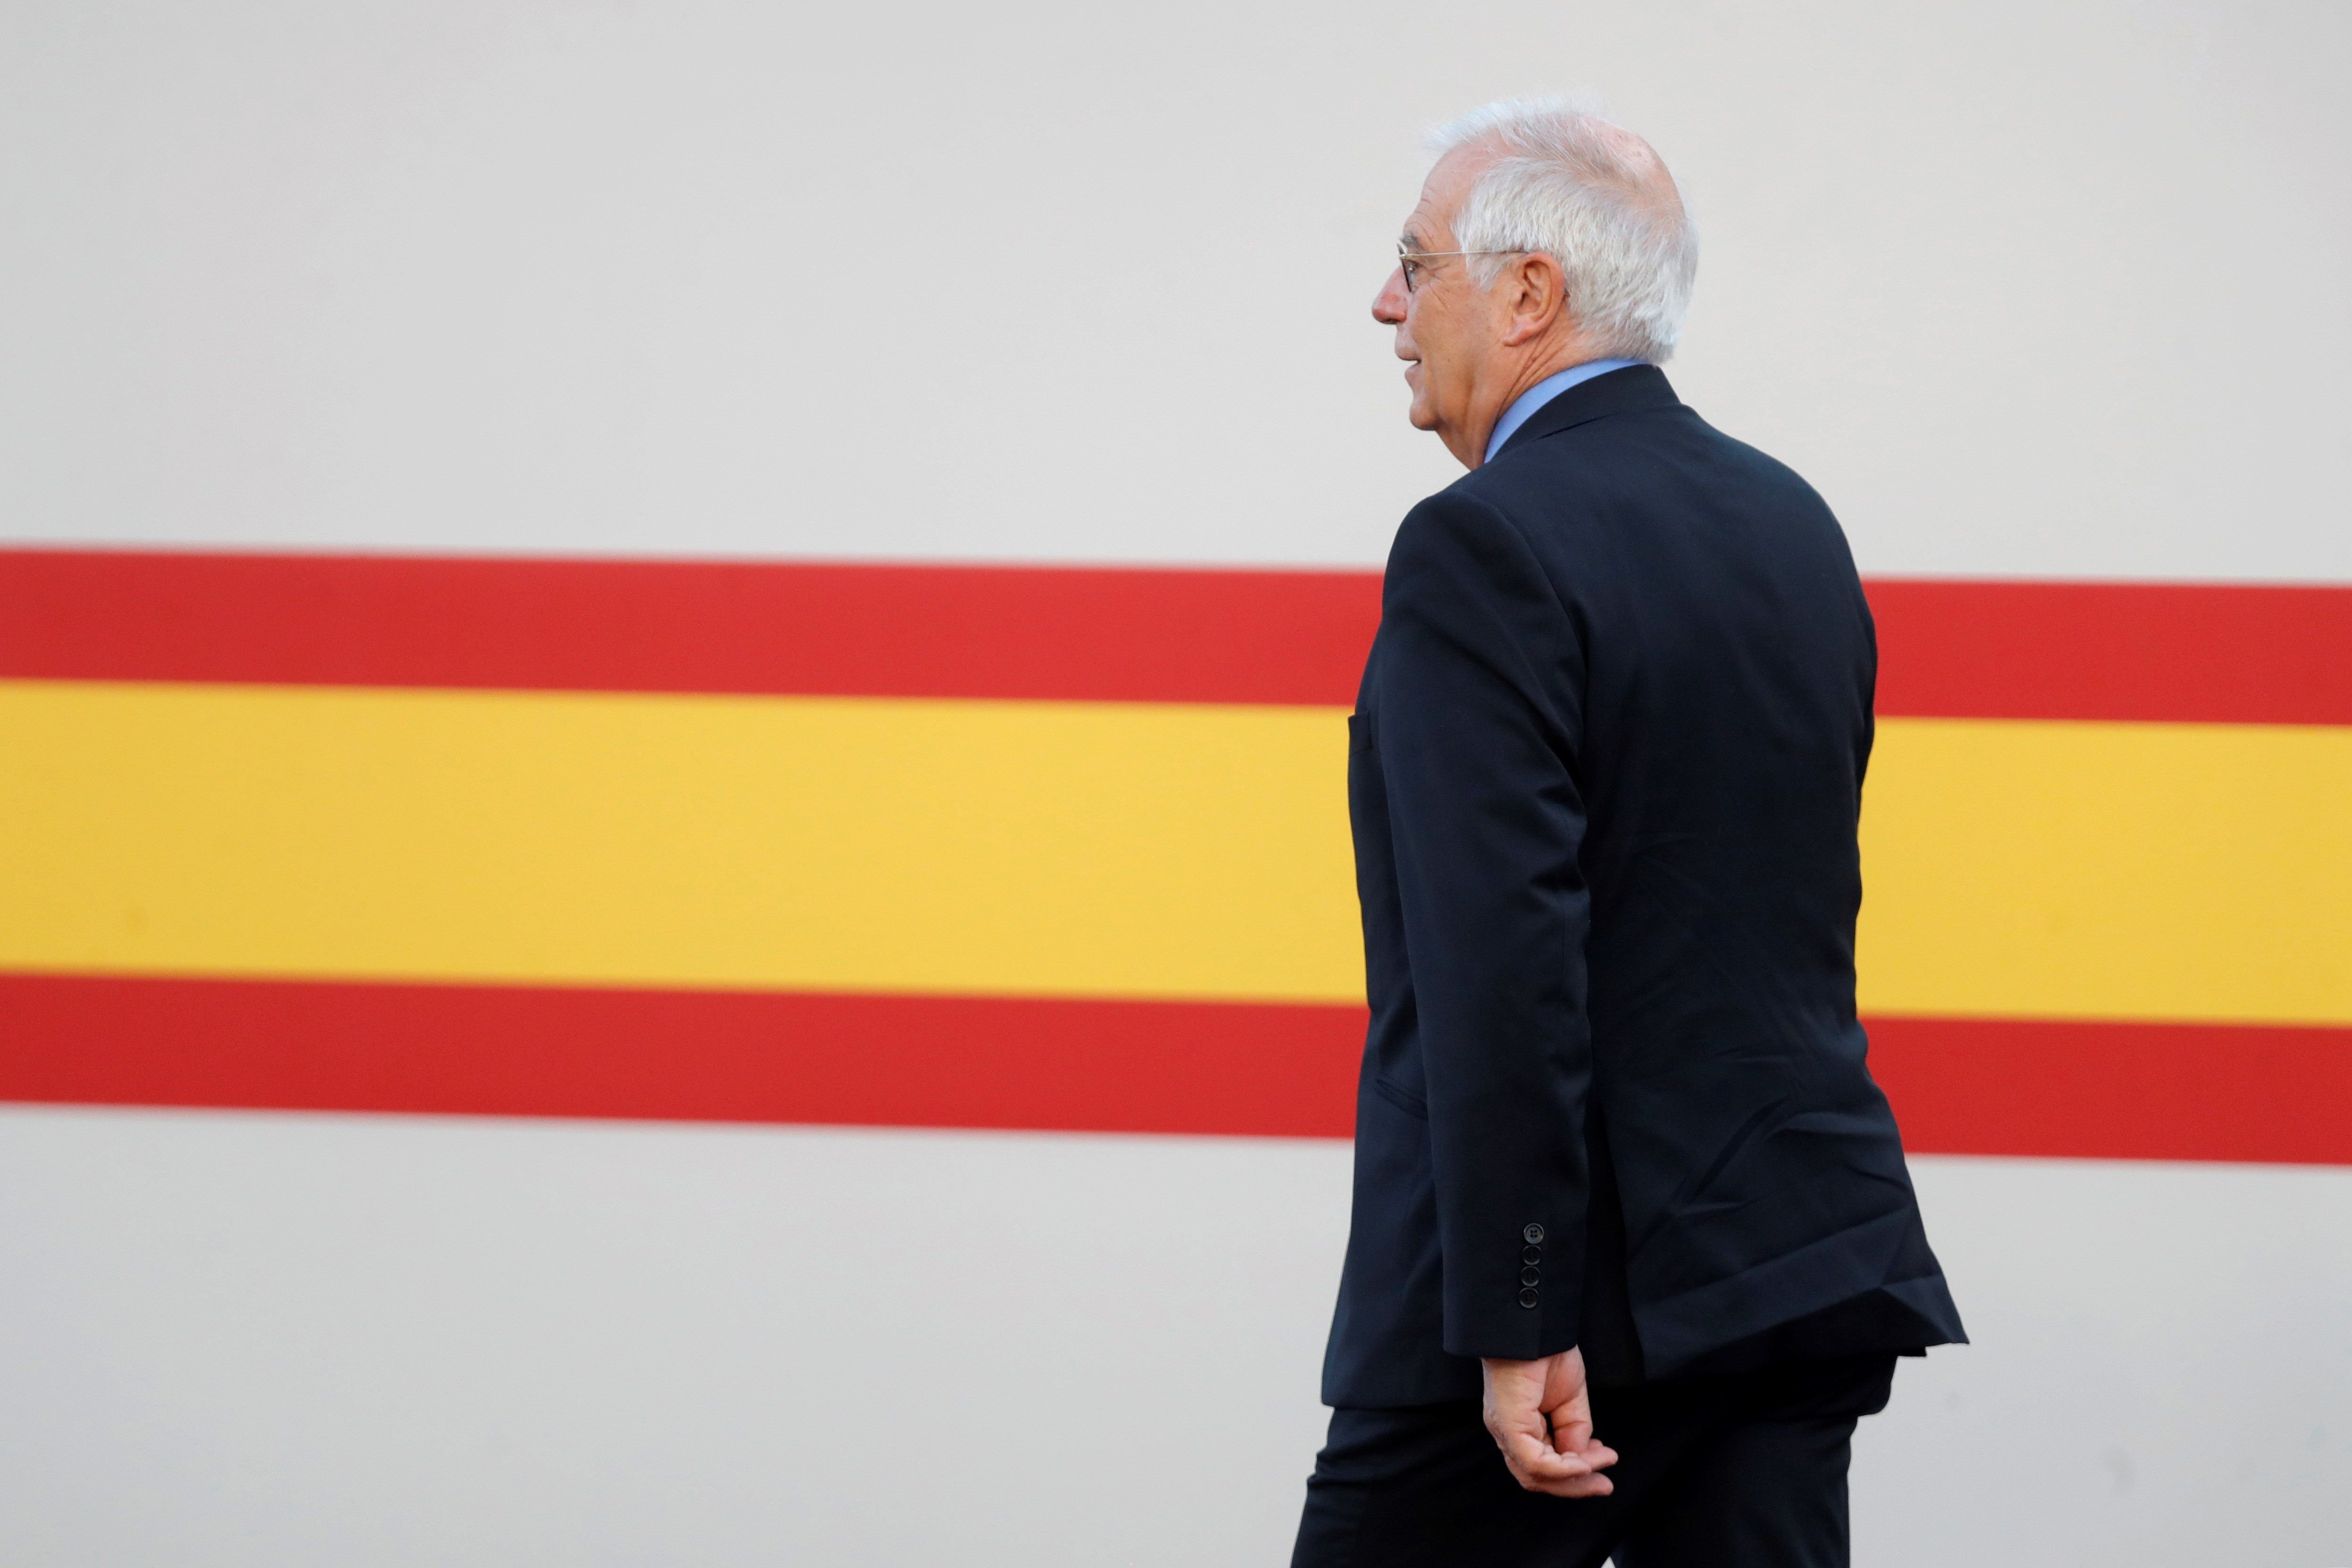 L’ordre de Borrell al seu cònsol a Escòcia: "Cal impedir totalment la presència catalana"